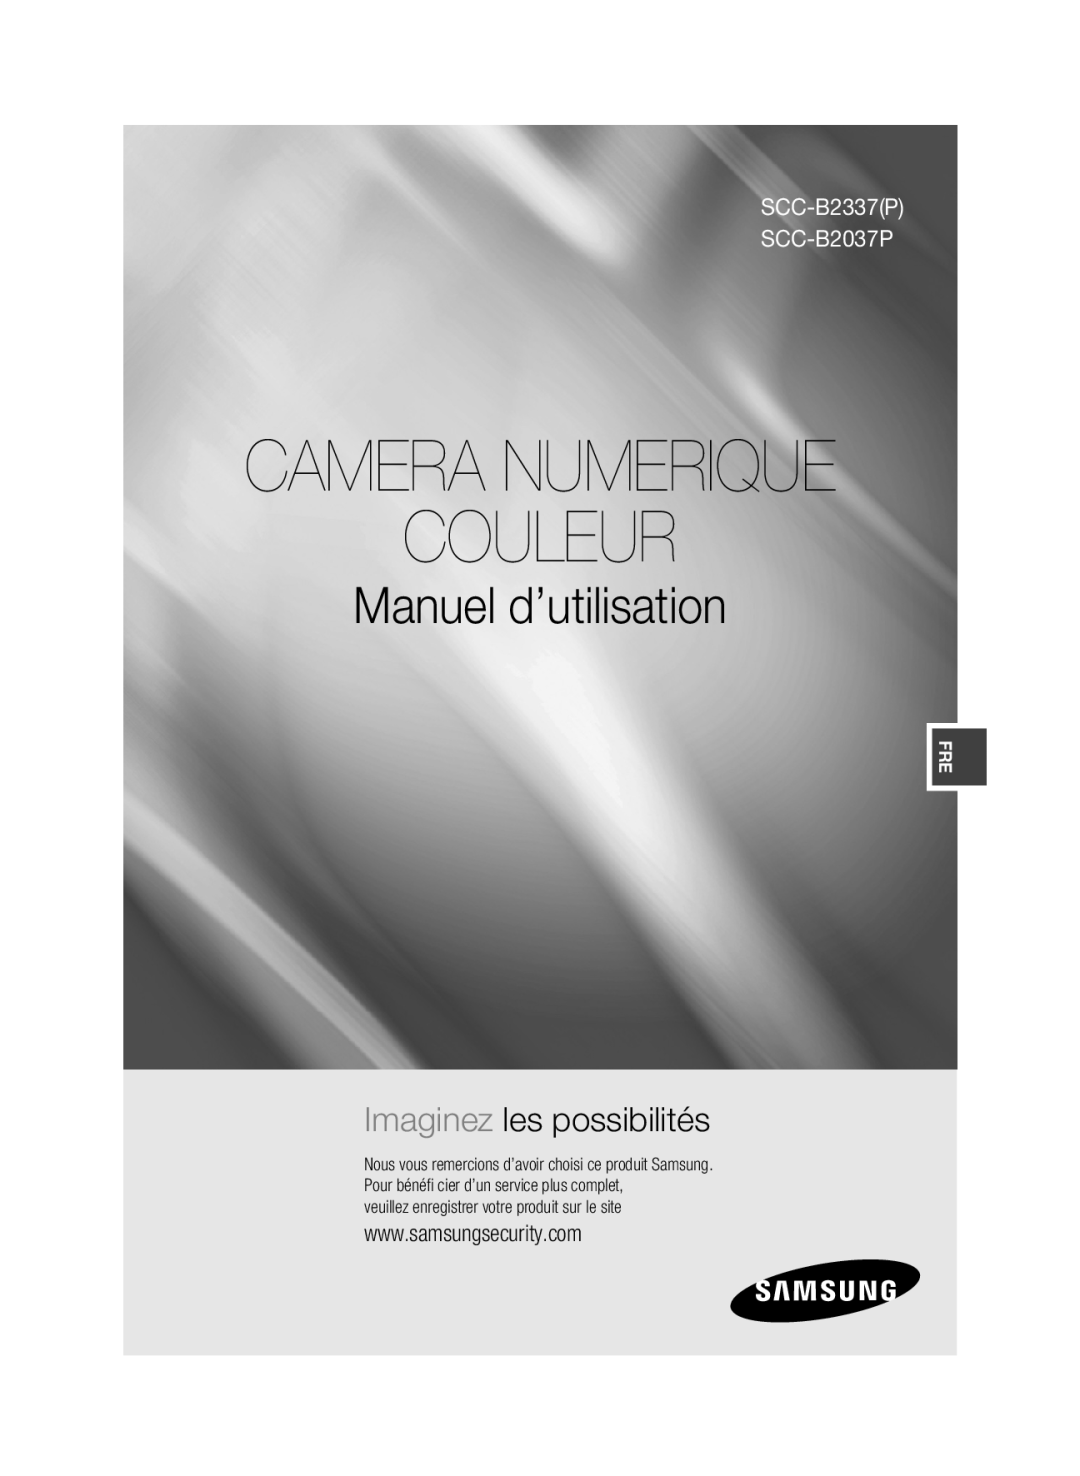 Samsung manual Couleur, Manuel d’utilisation, Imaginez les possibilités, Camera Numerique, SCC-B2337P SCC-B2037P 